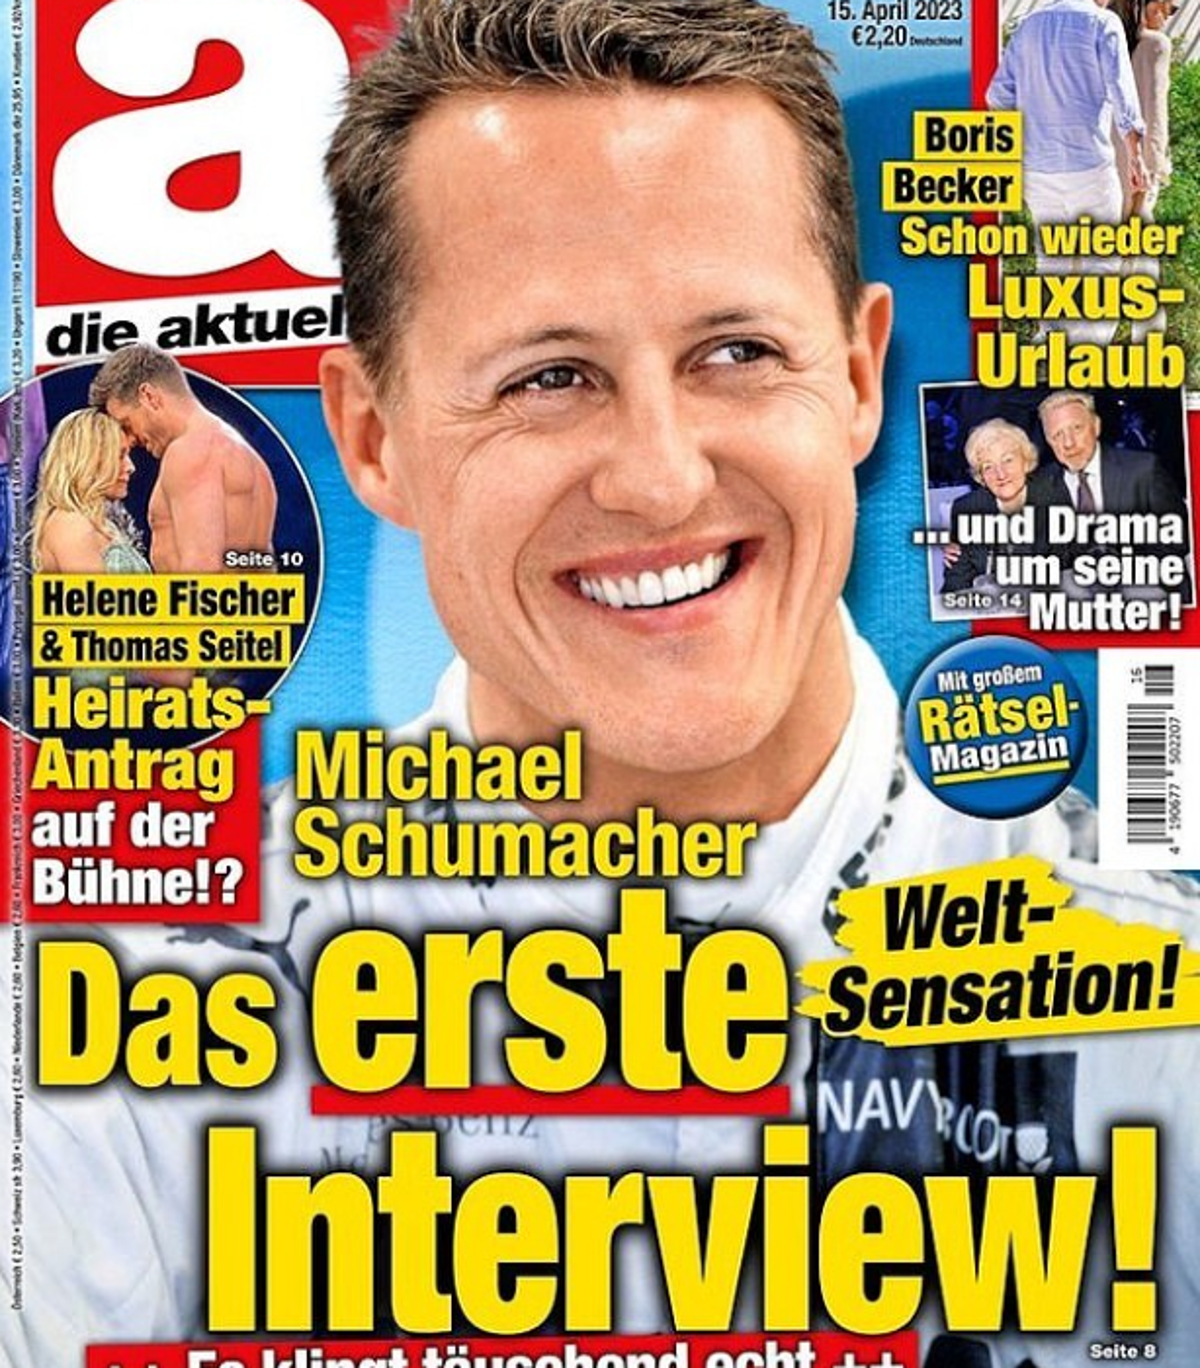 Die Familie von Michael Schumacher verklagt ein deutsches Magazin wegen eines „dummen“ Interviews mit Amnesty International